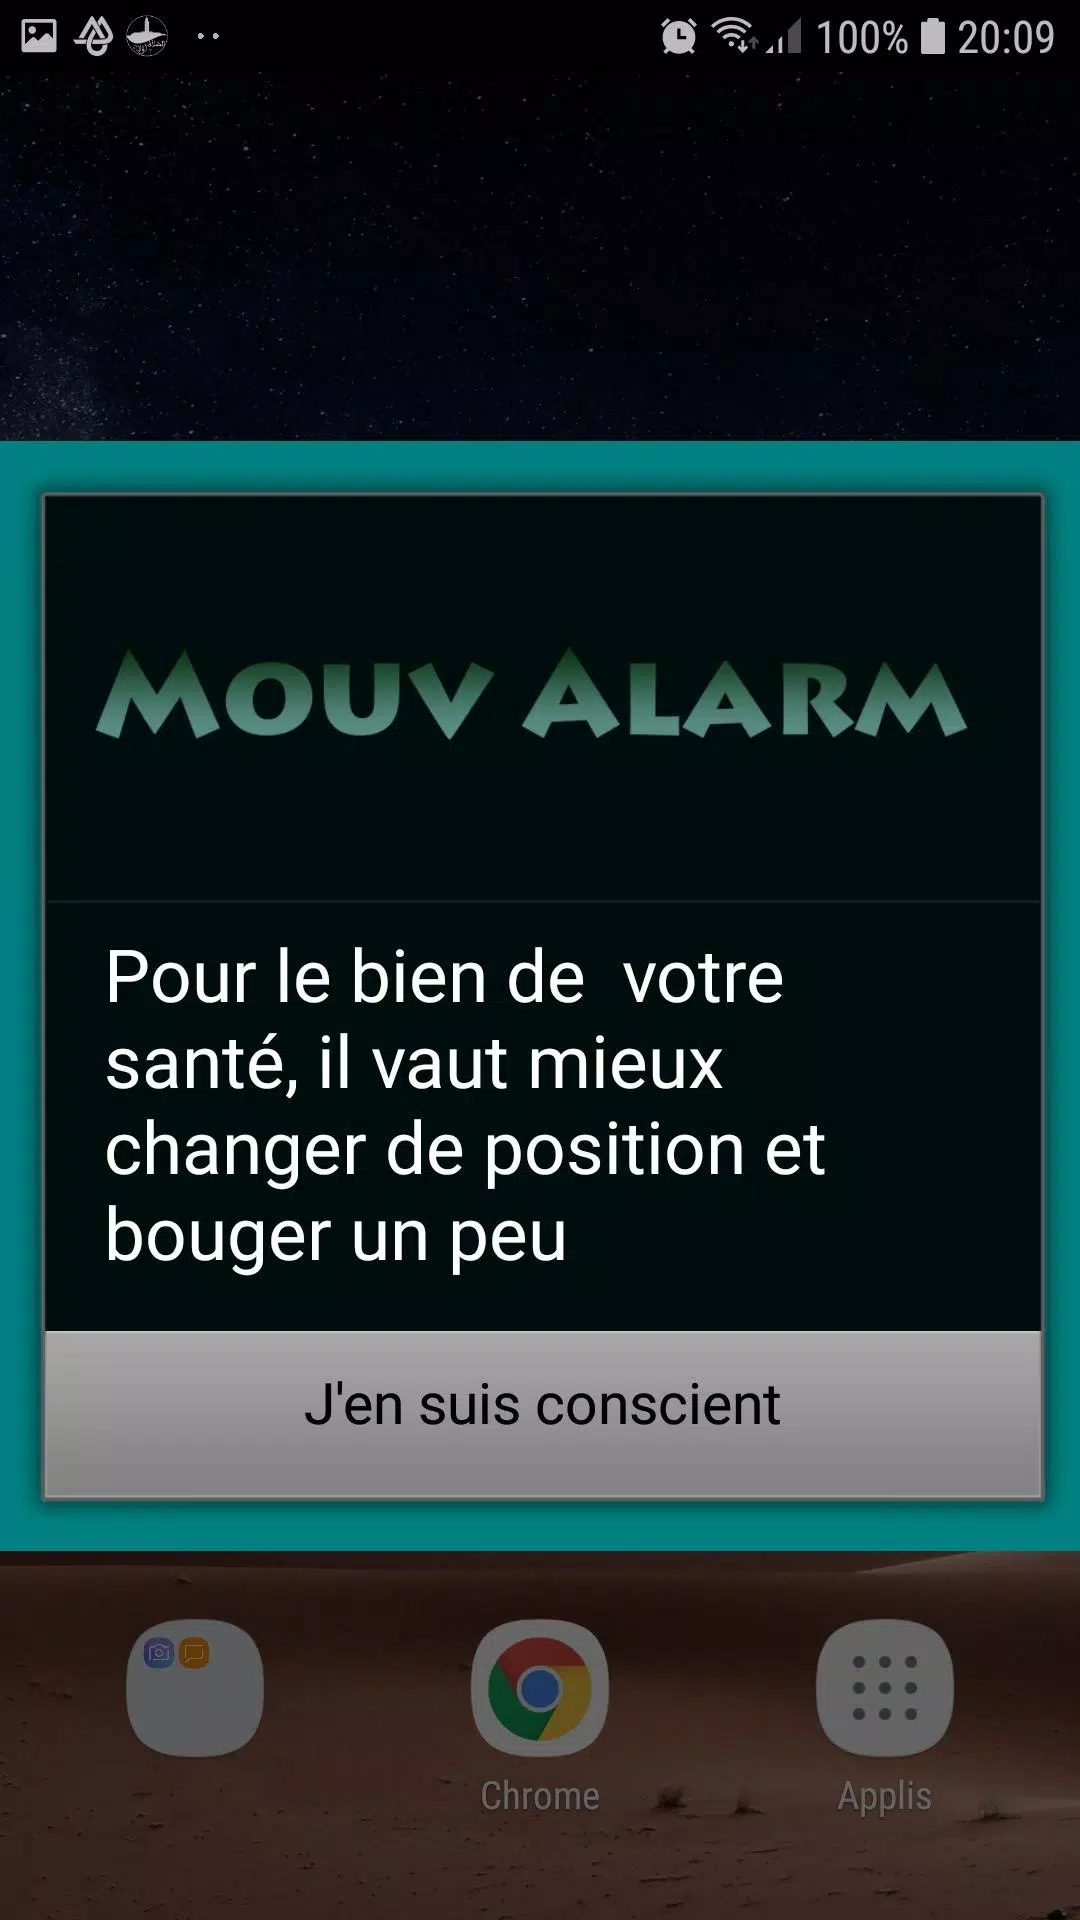 Mouv Alarm APK pour Android Télécharger